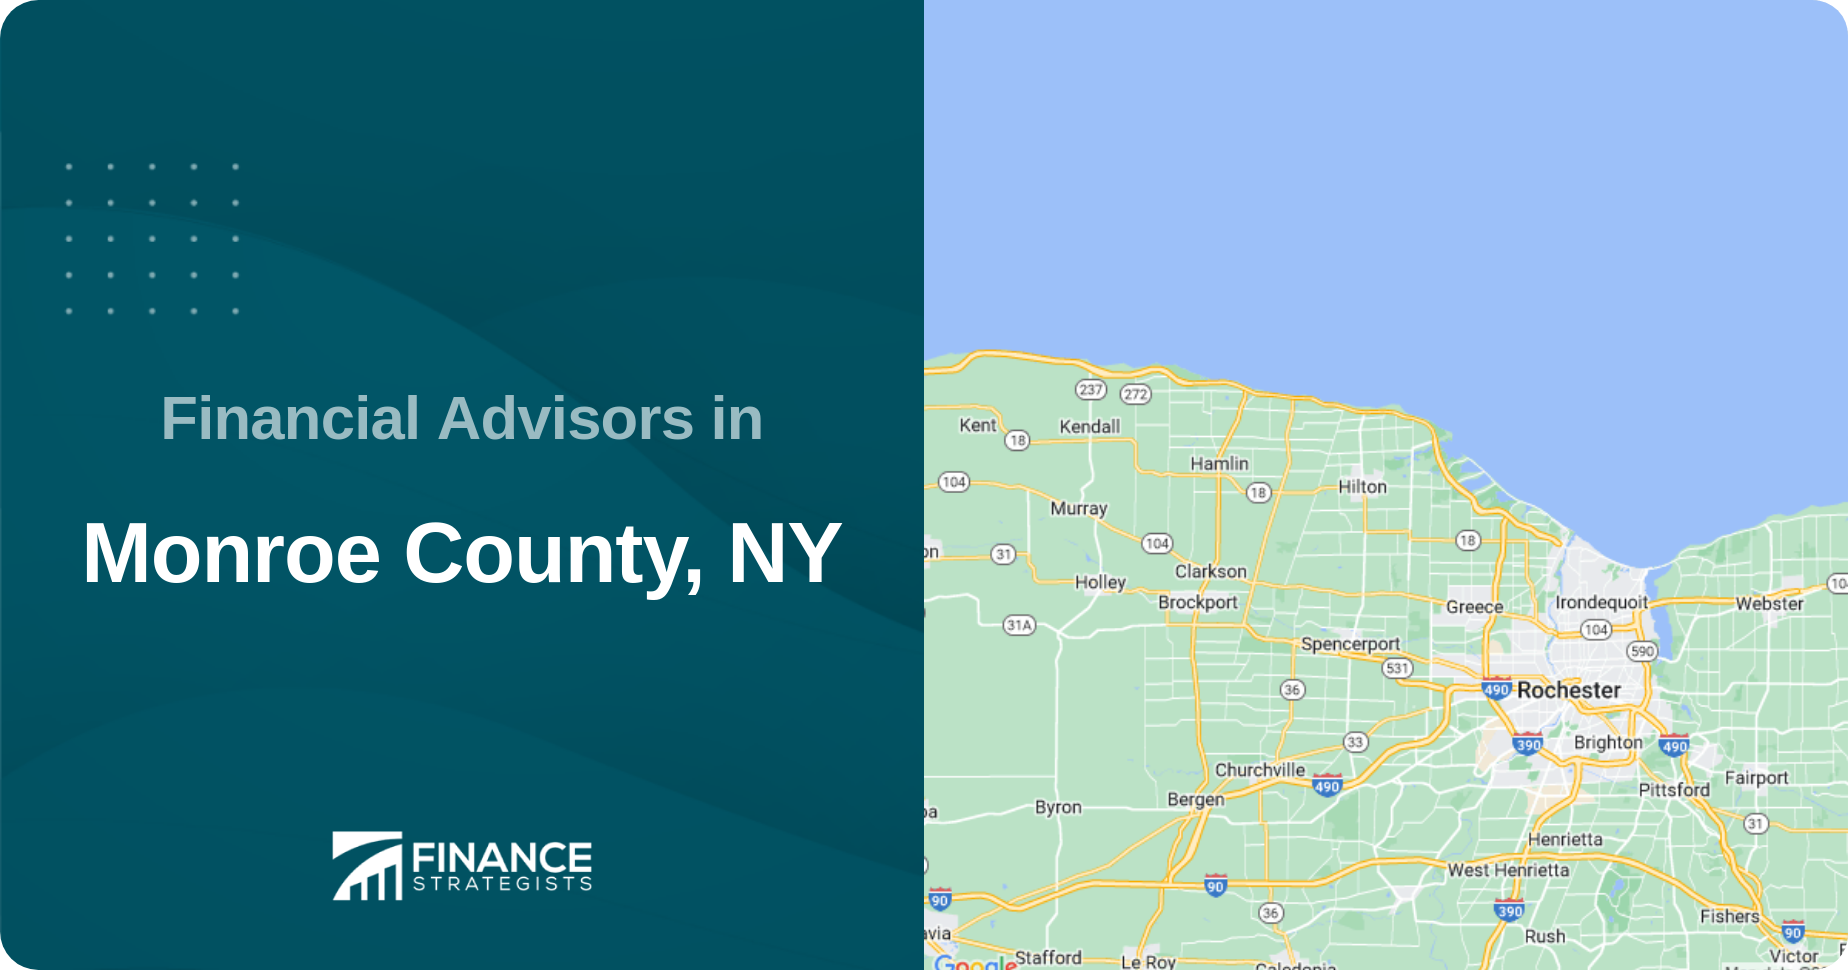 Financial Advisors in Monroe County, NY